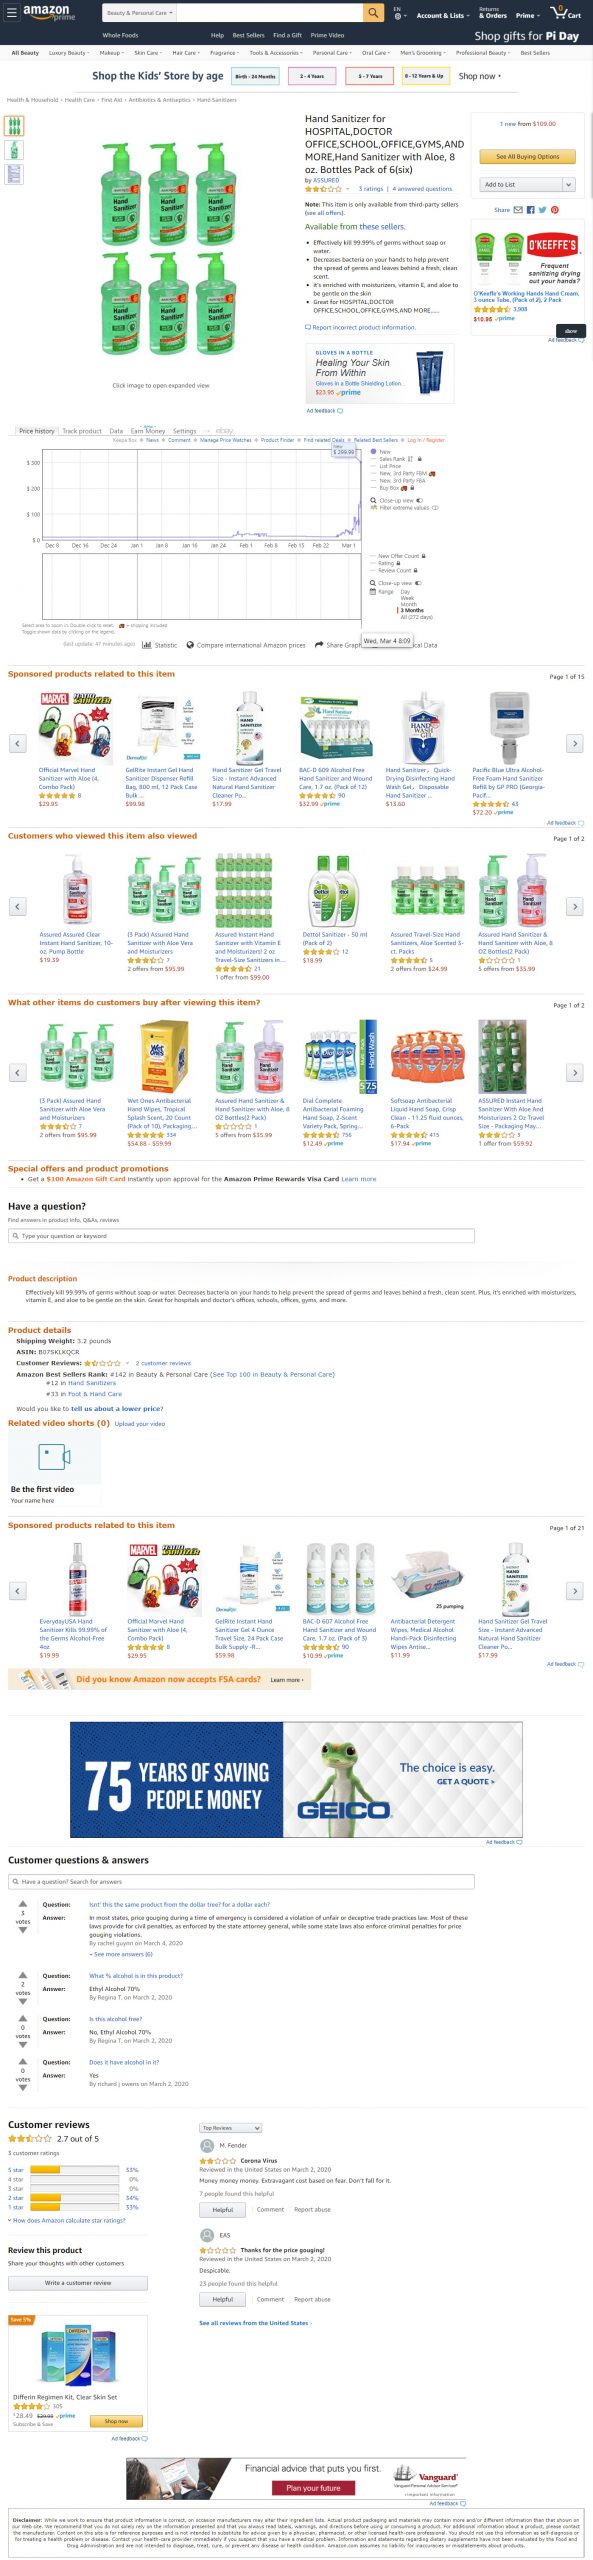 Amazon Price Gouging Screen Shot